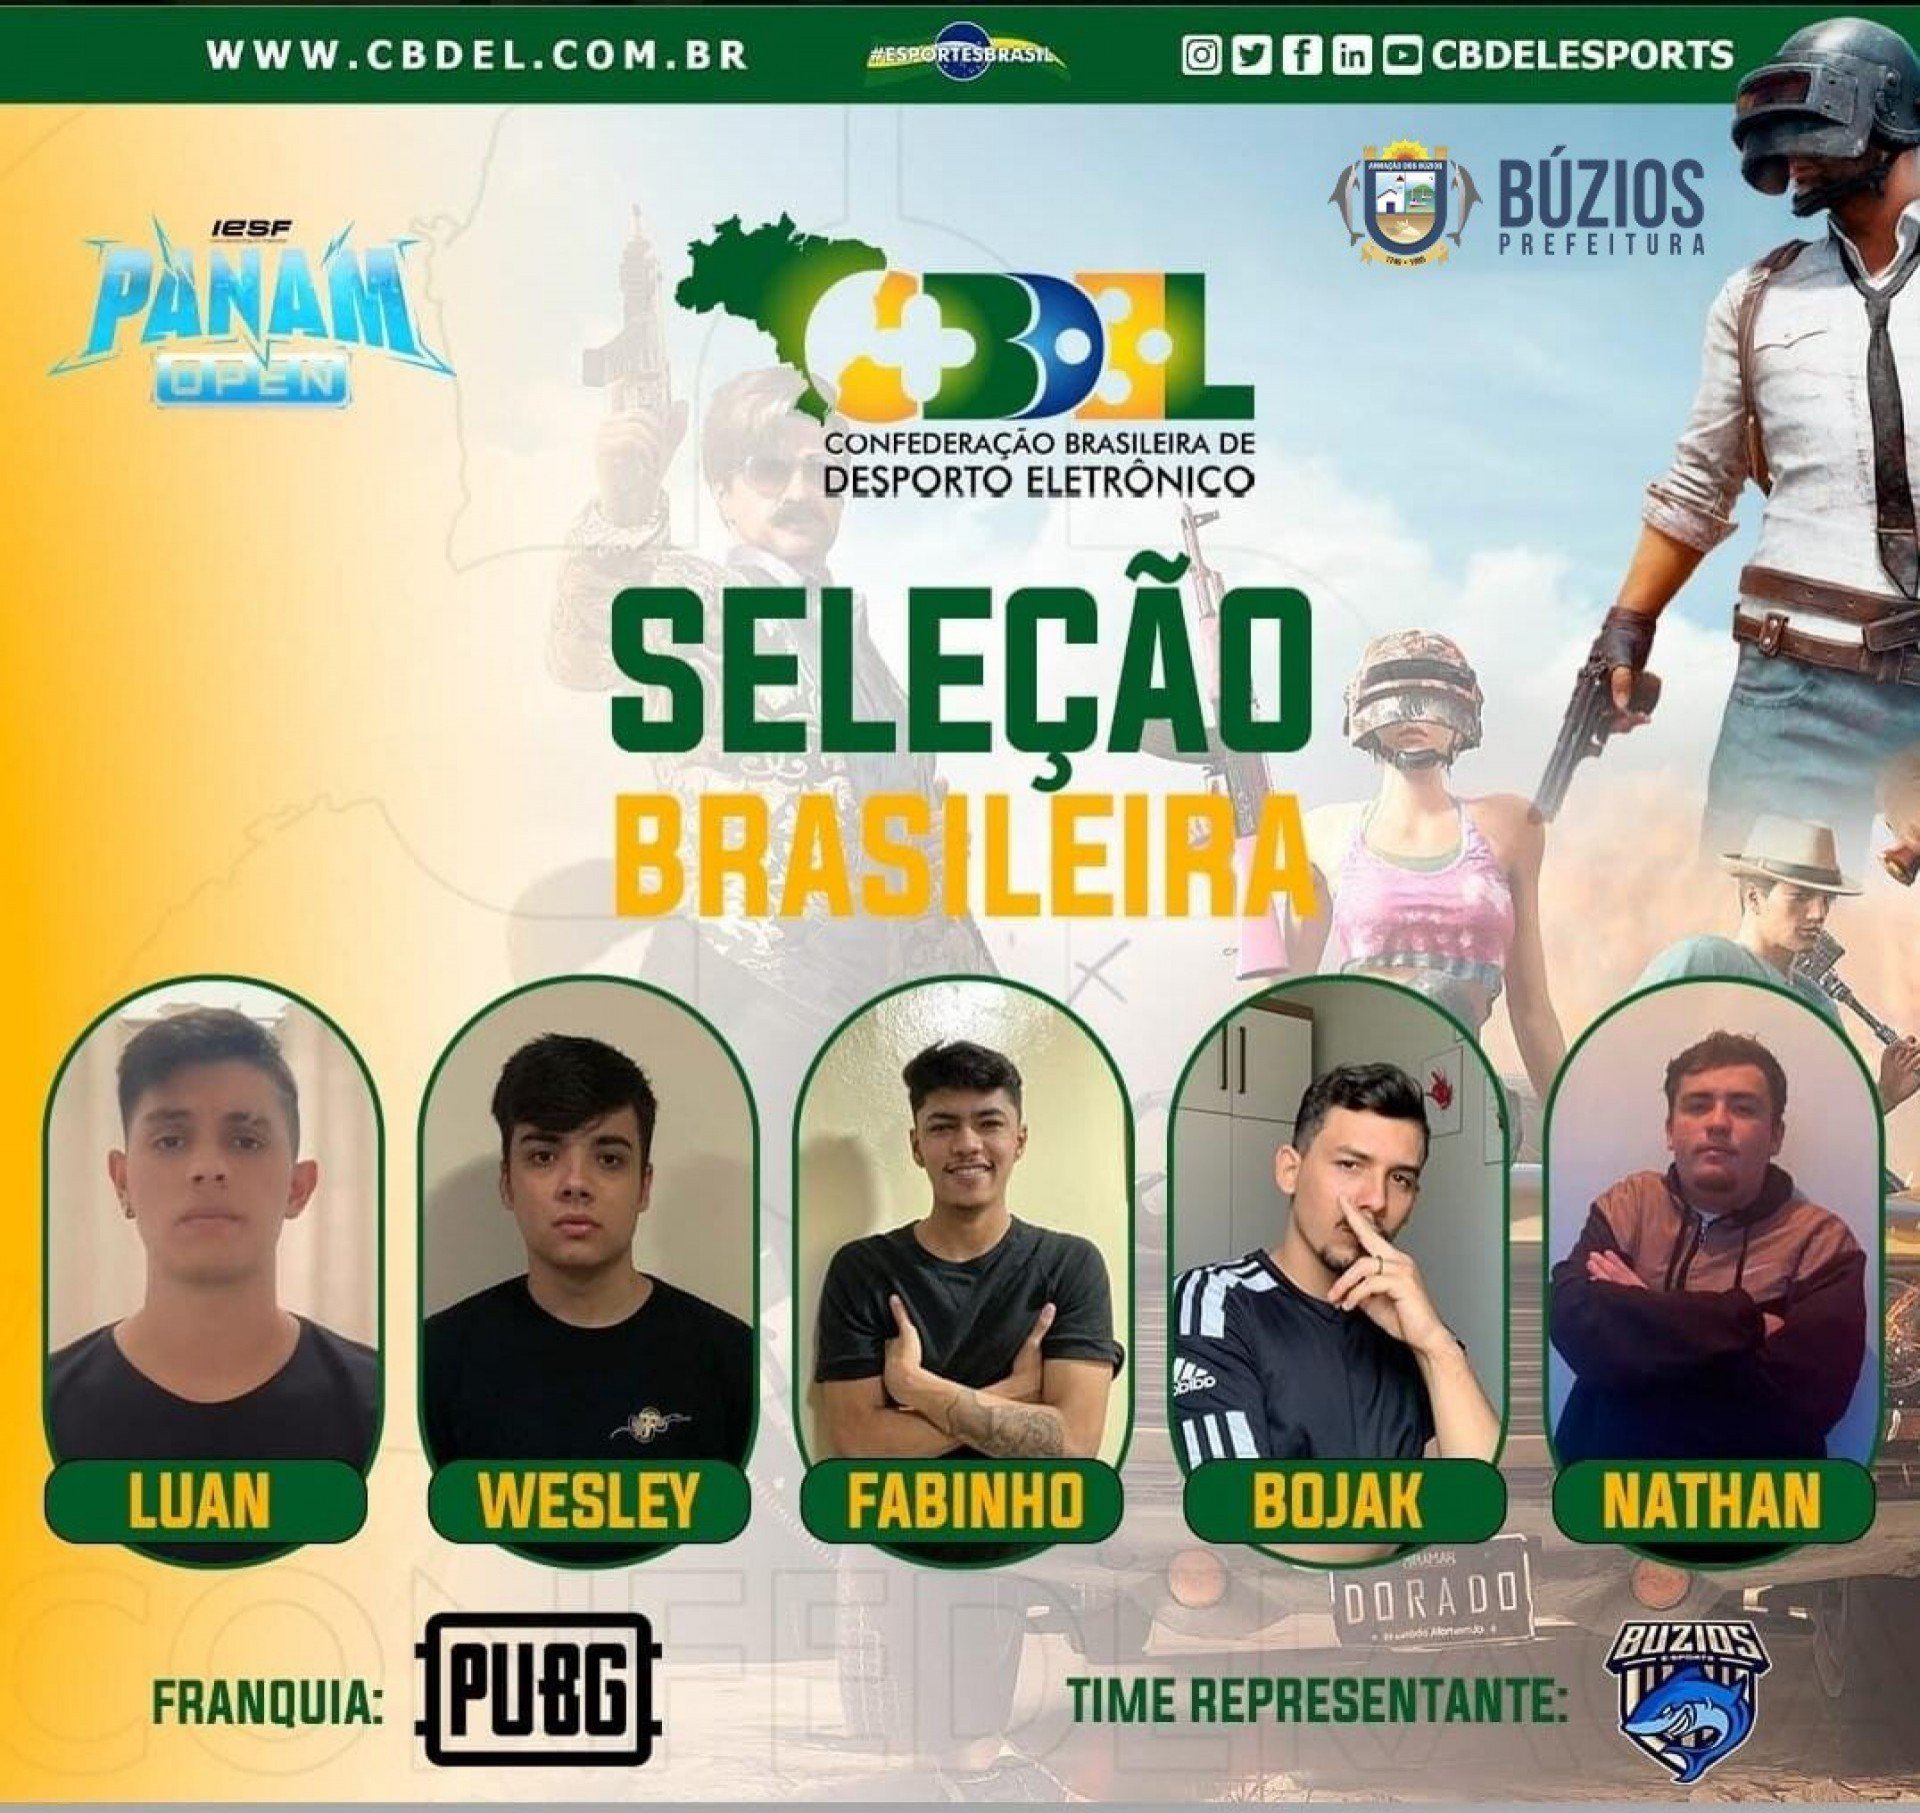 Campeonato Carioca de Free Fire acontece nesta quarta (28) em Búzios